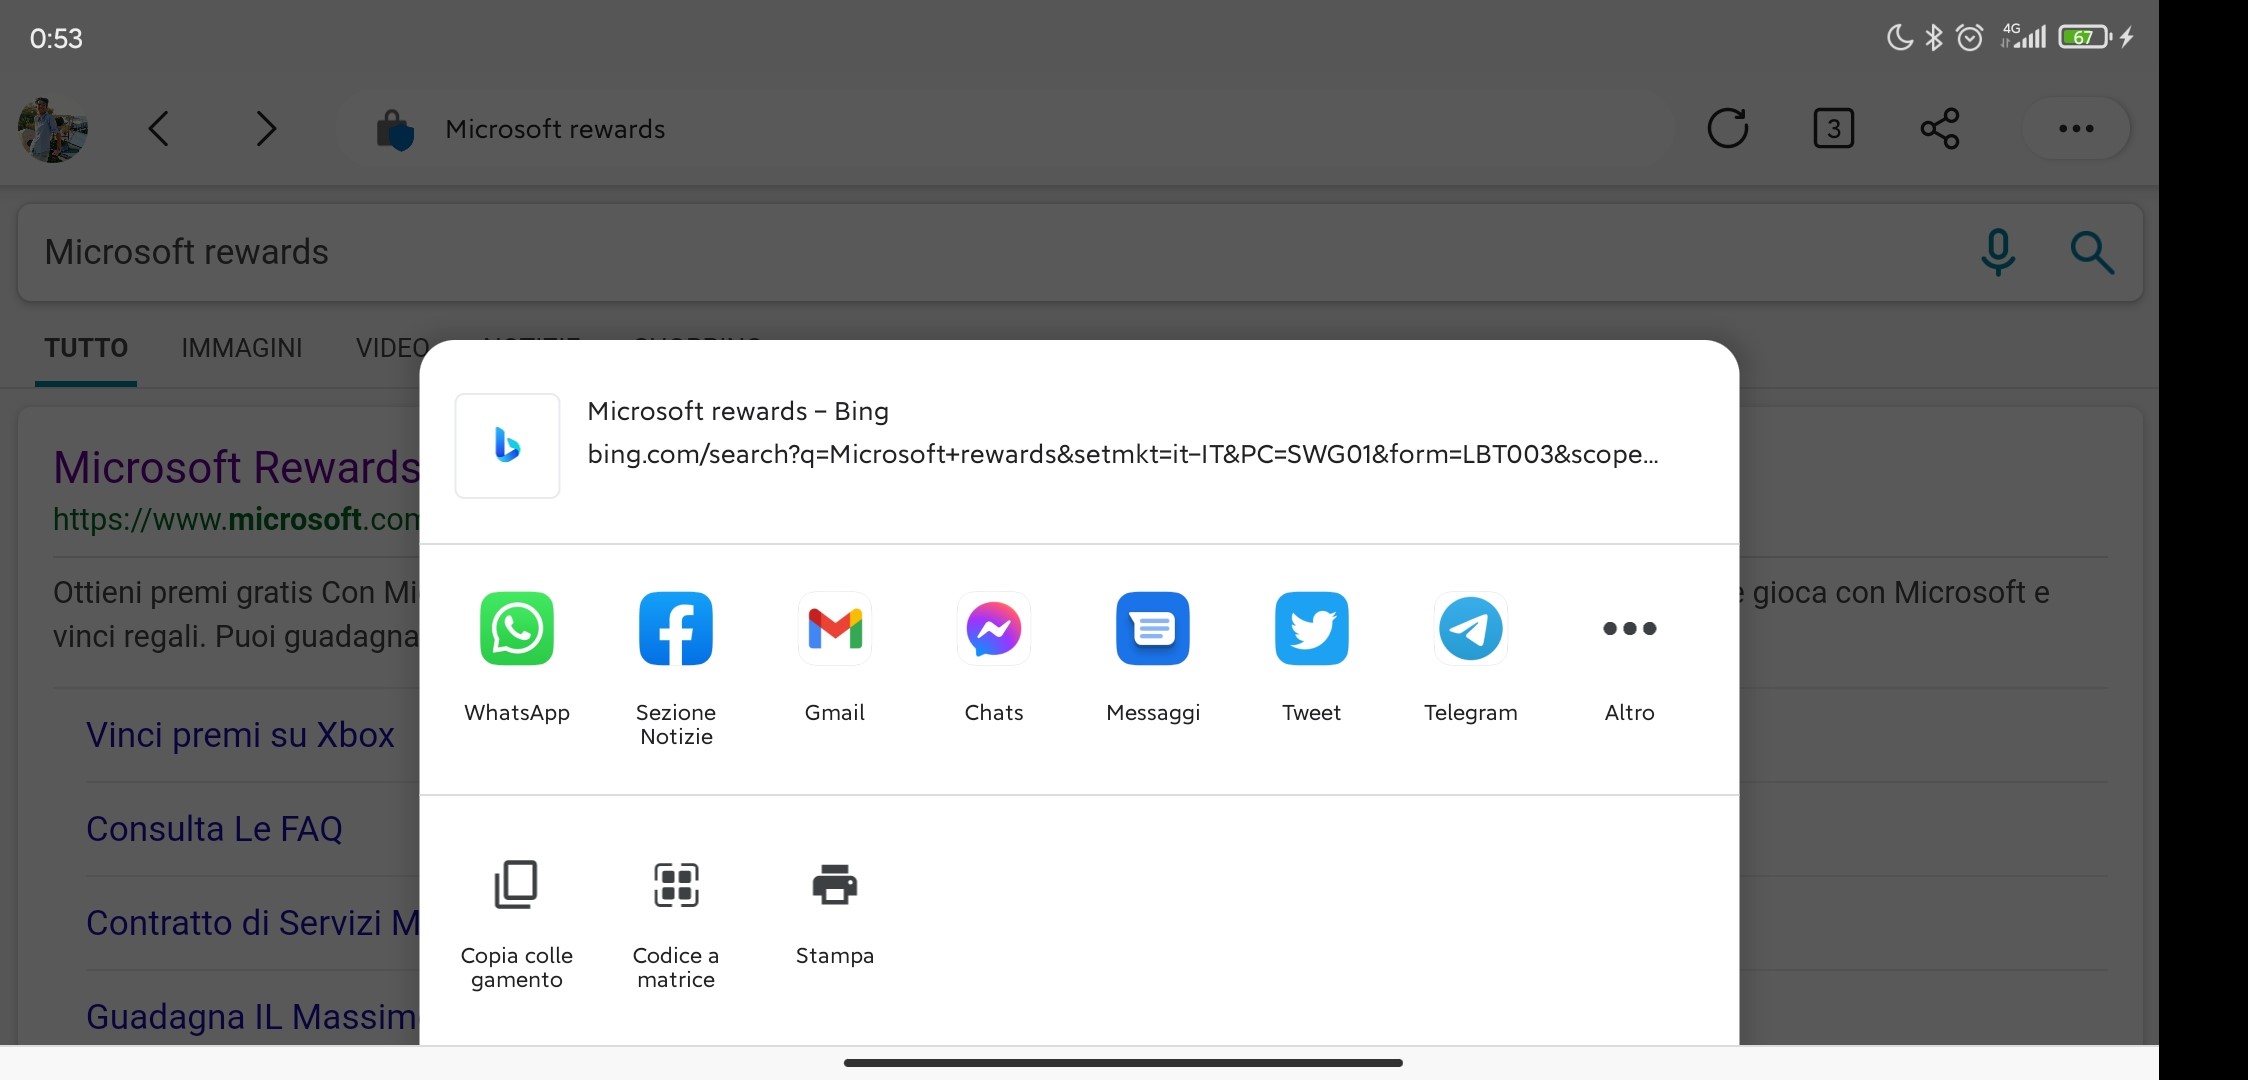 Microsoft Edge Canary - Android - Nuova schermata di condivisione